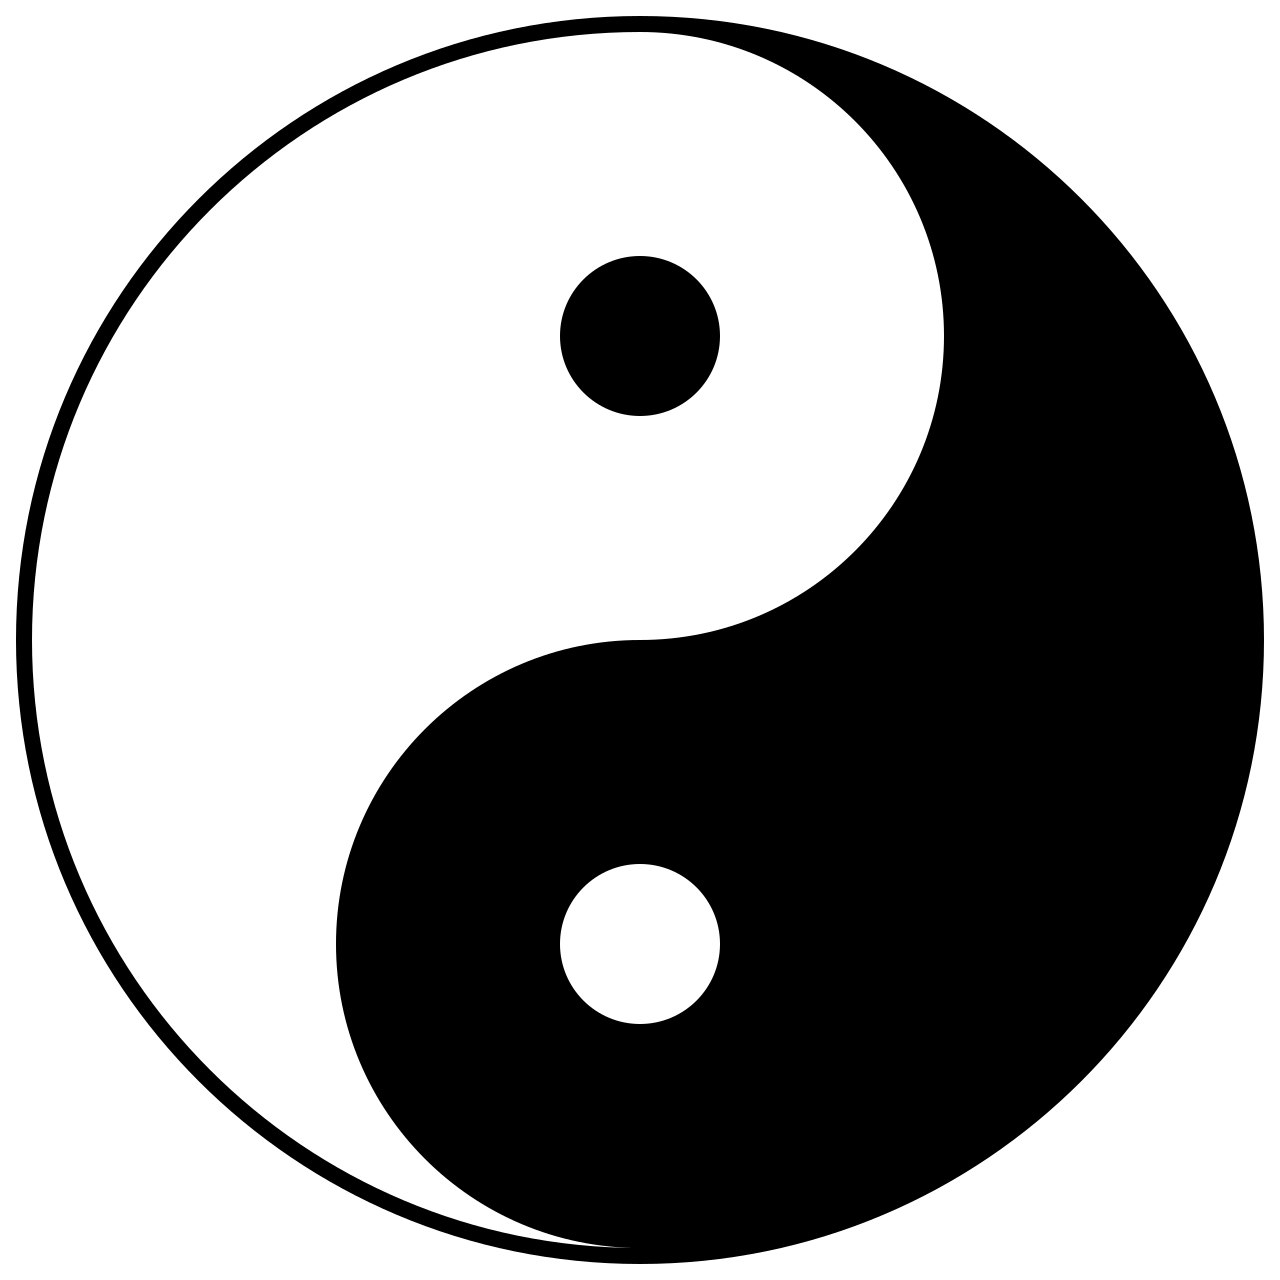 Yin-yang symbol